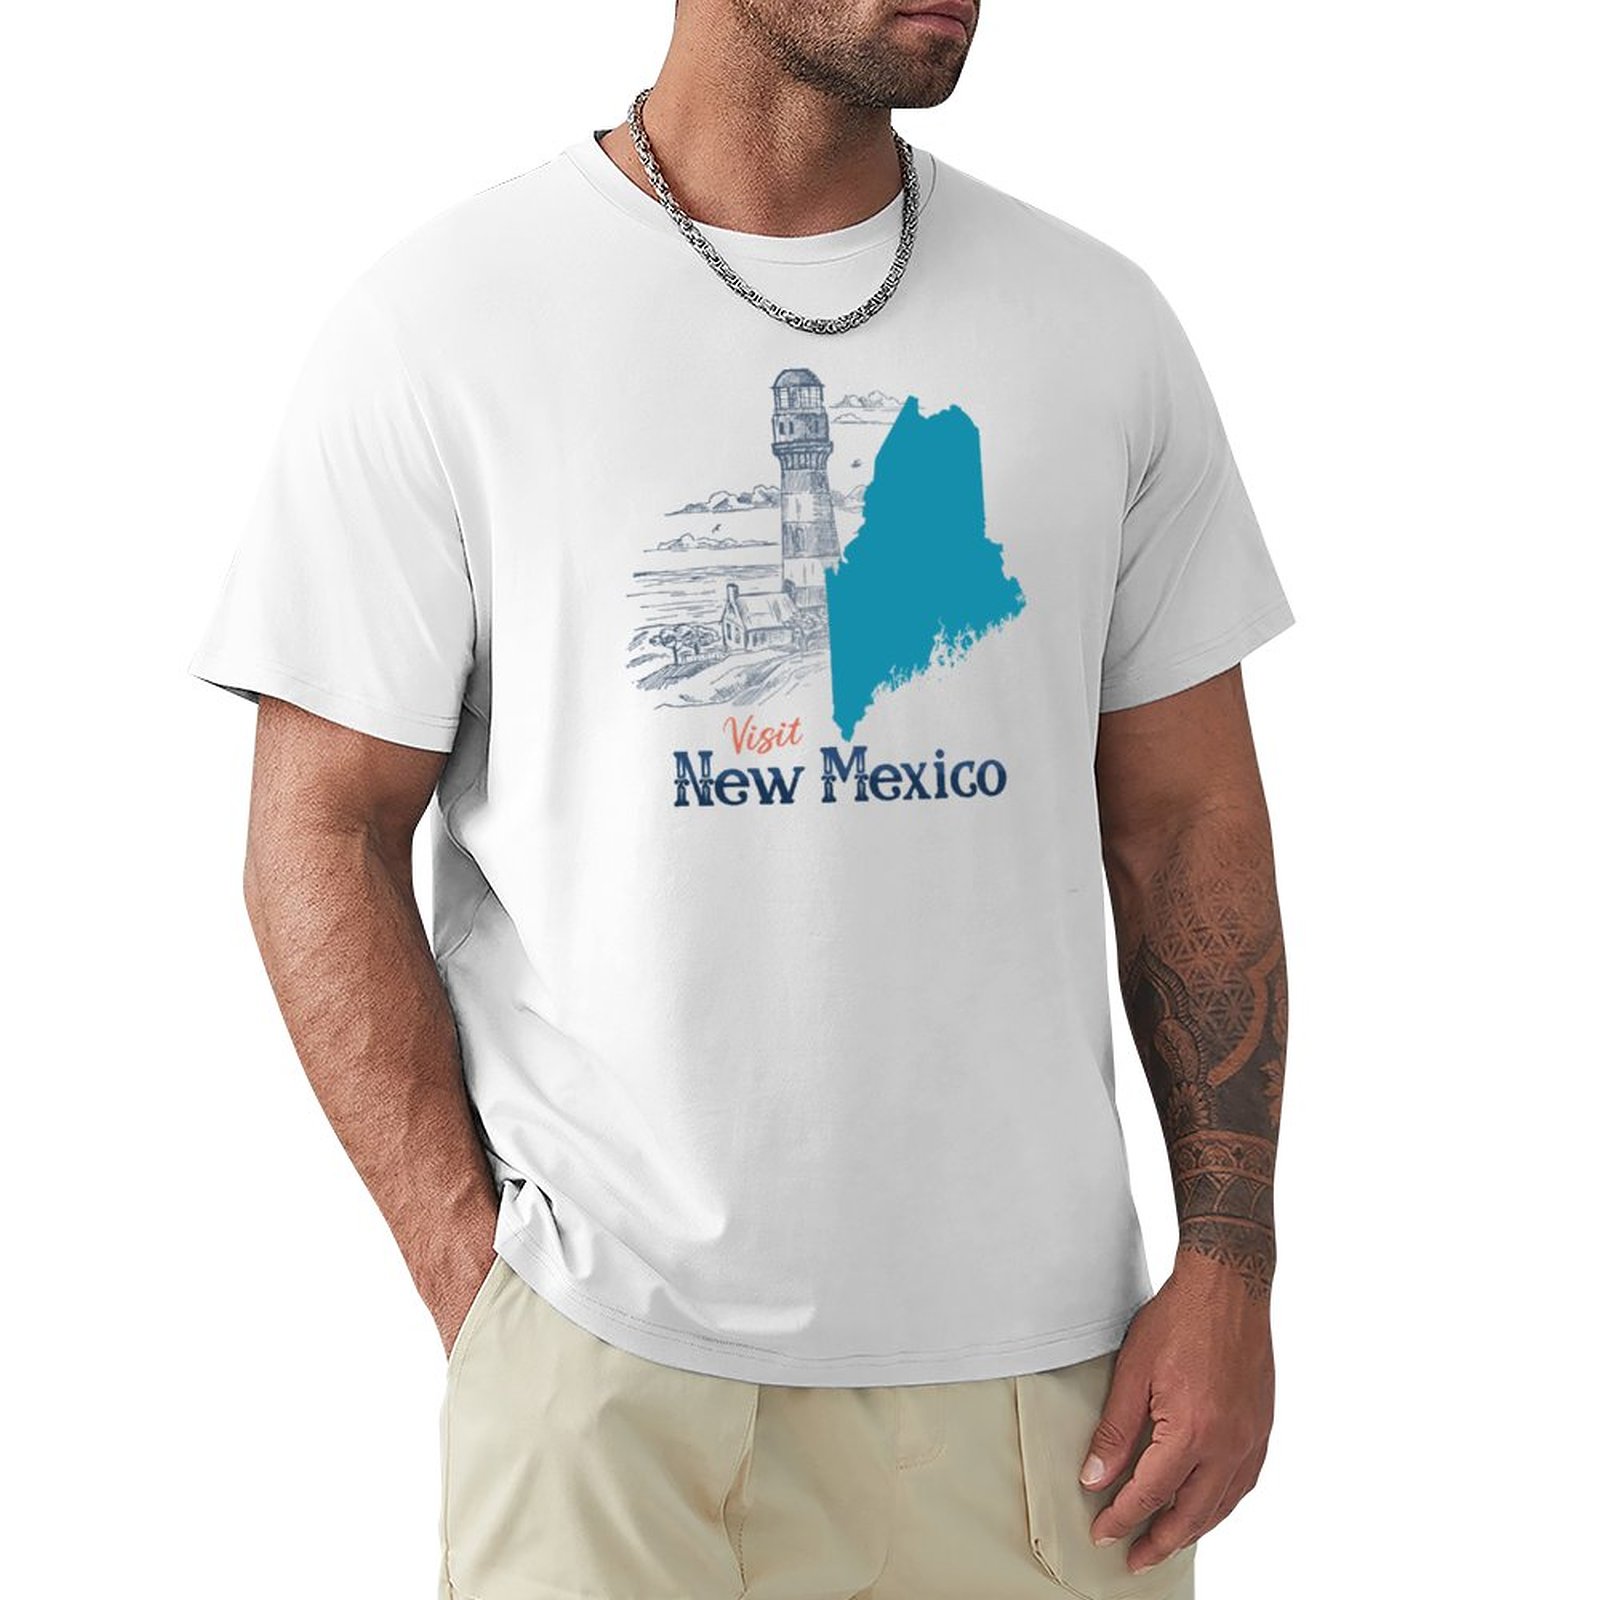 قم بزيارة نيو مكسيكو حالة خاطئة تي شيرت تي شيرت القميص السريع قميص قميص للرجال قميص تجريب